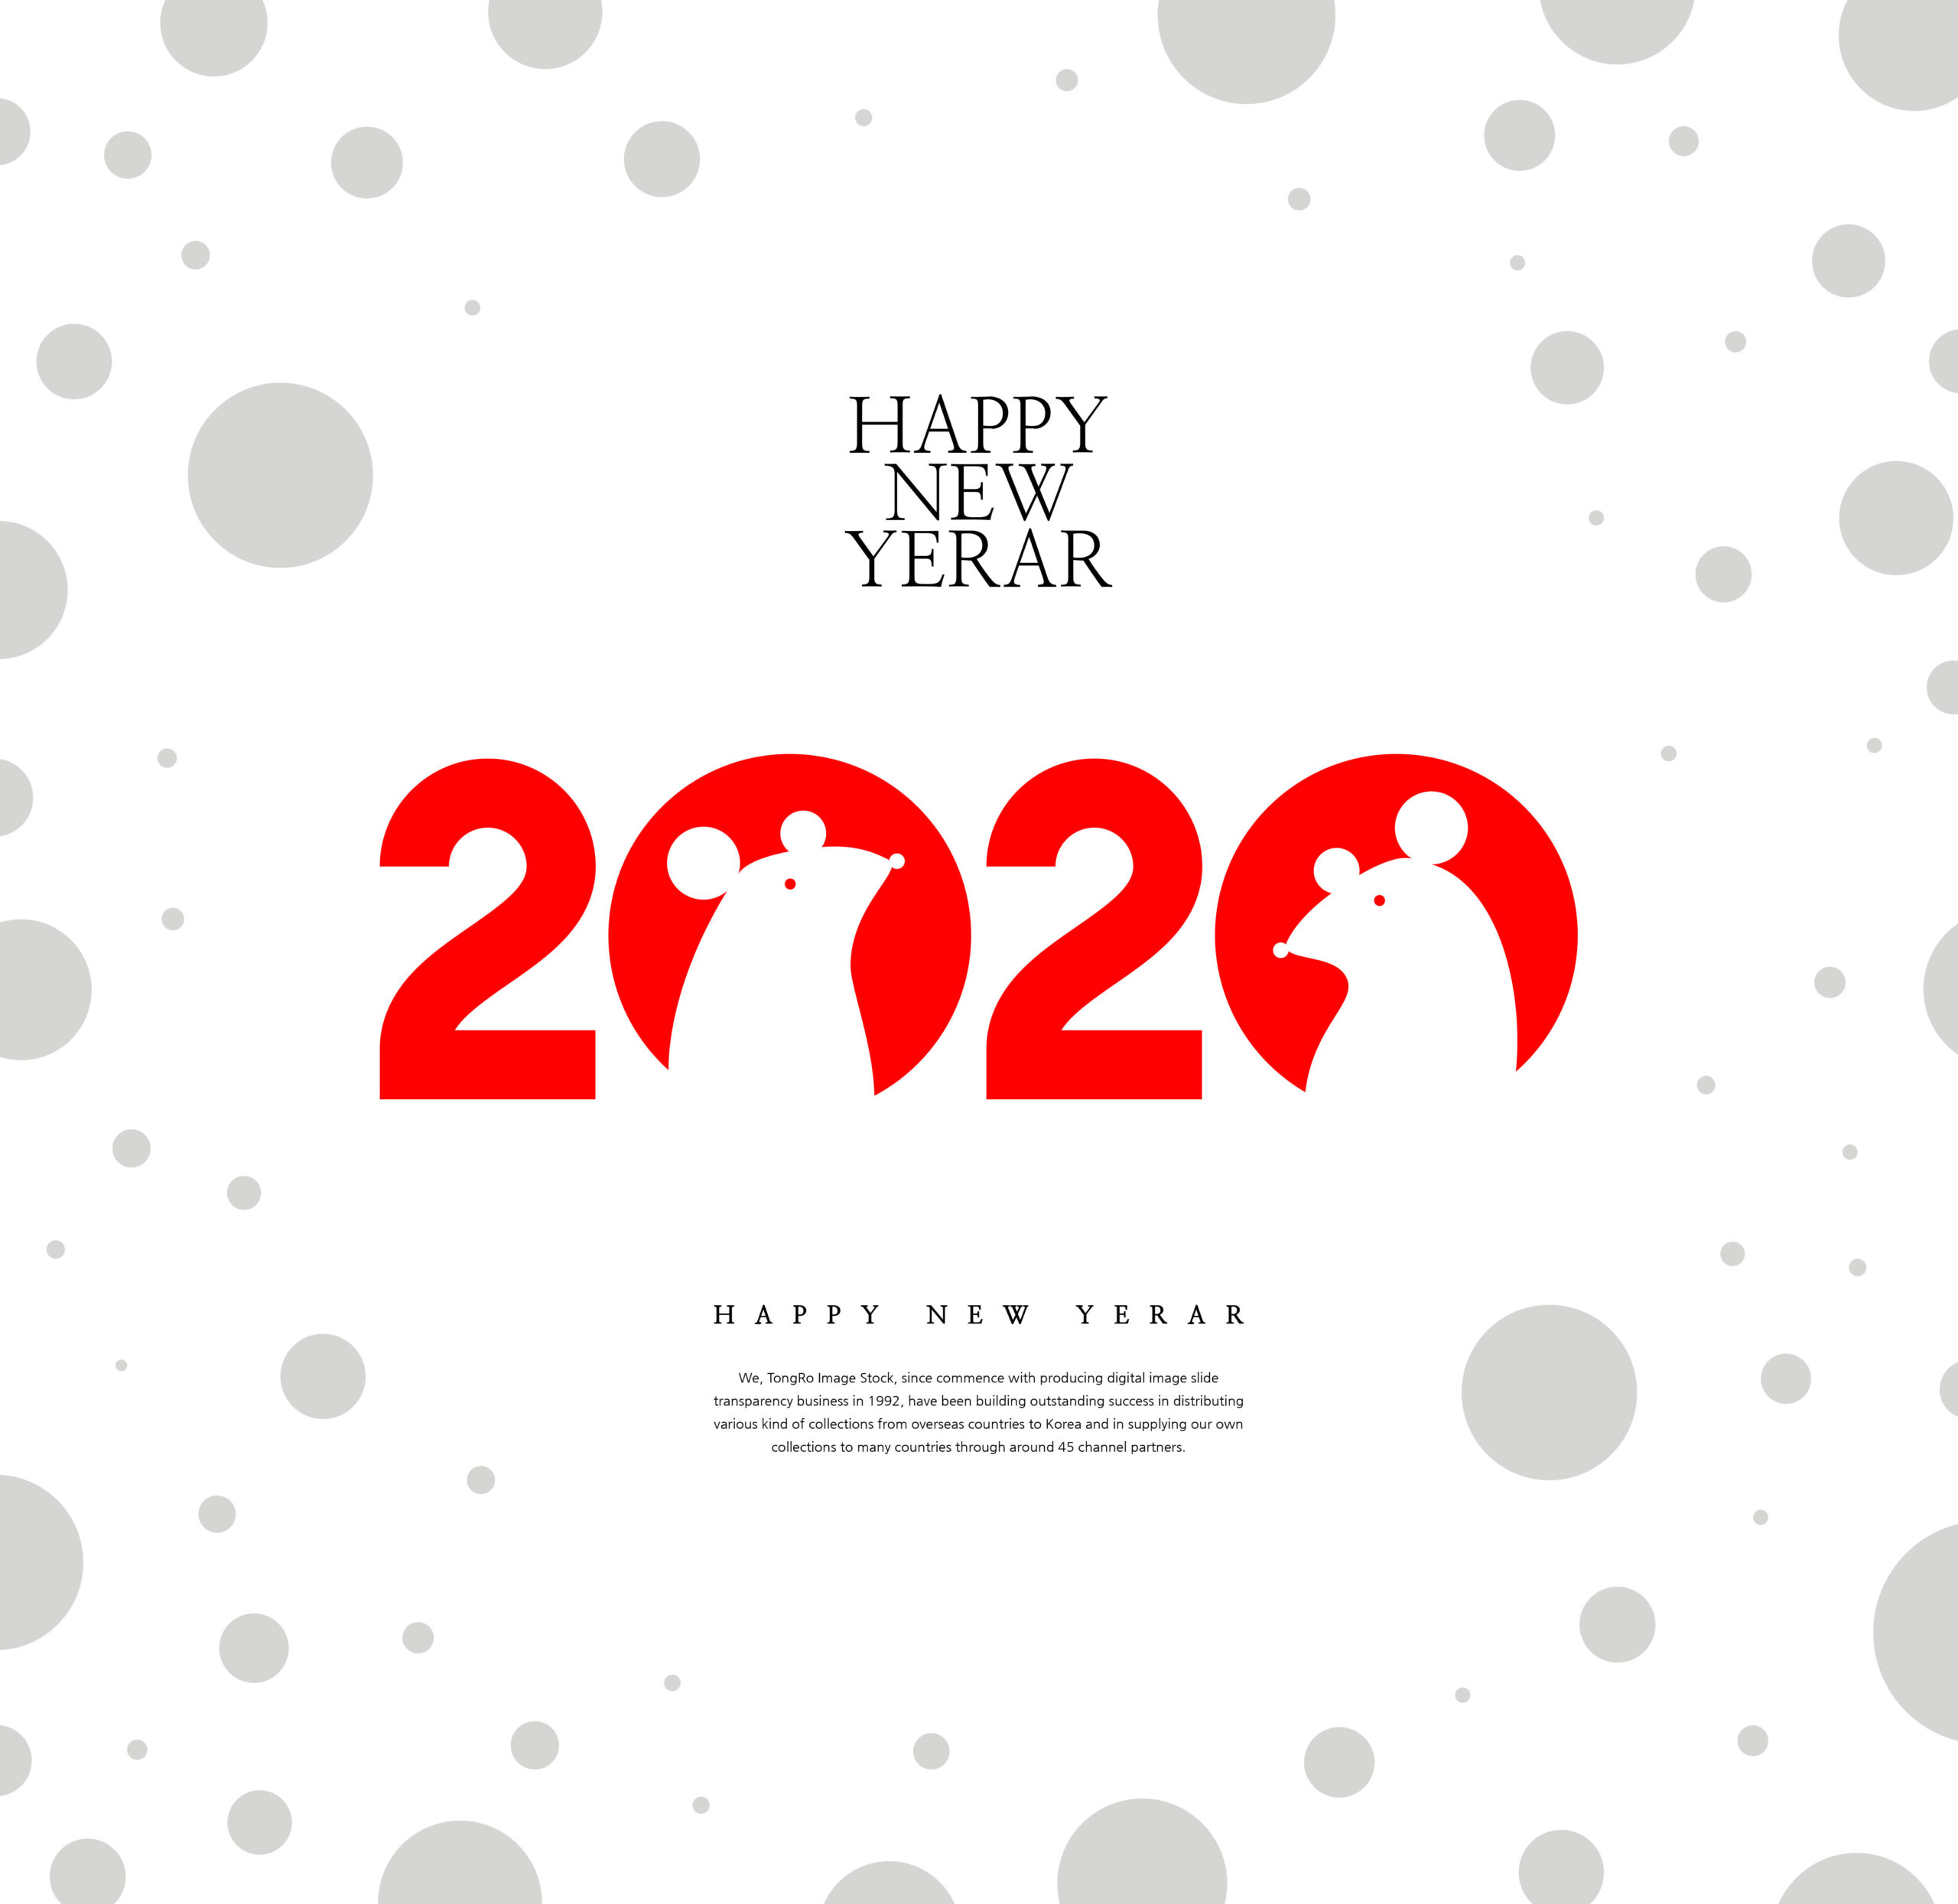 创意2020鼠年新年快乐主题海报模板套装[PSD]插图